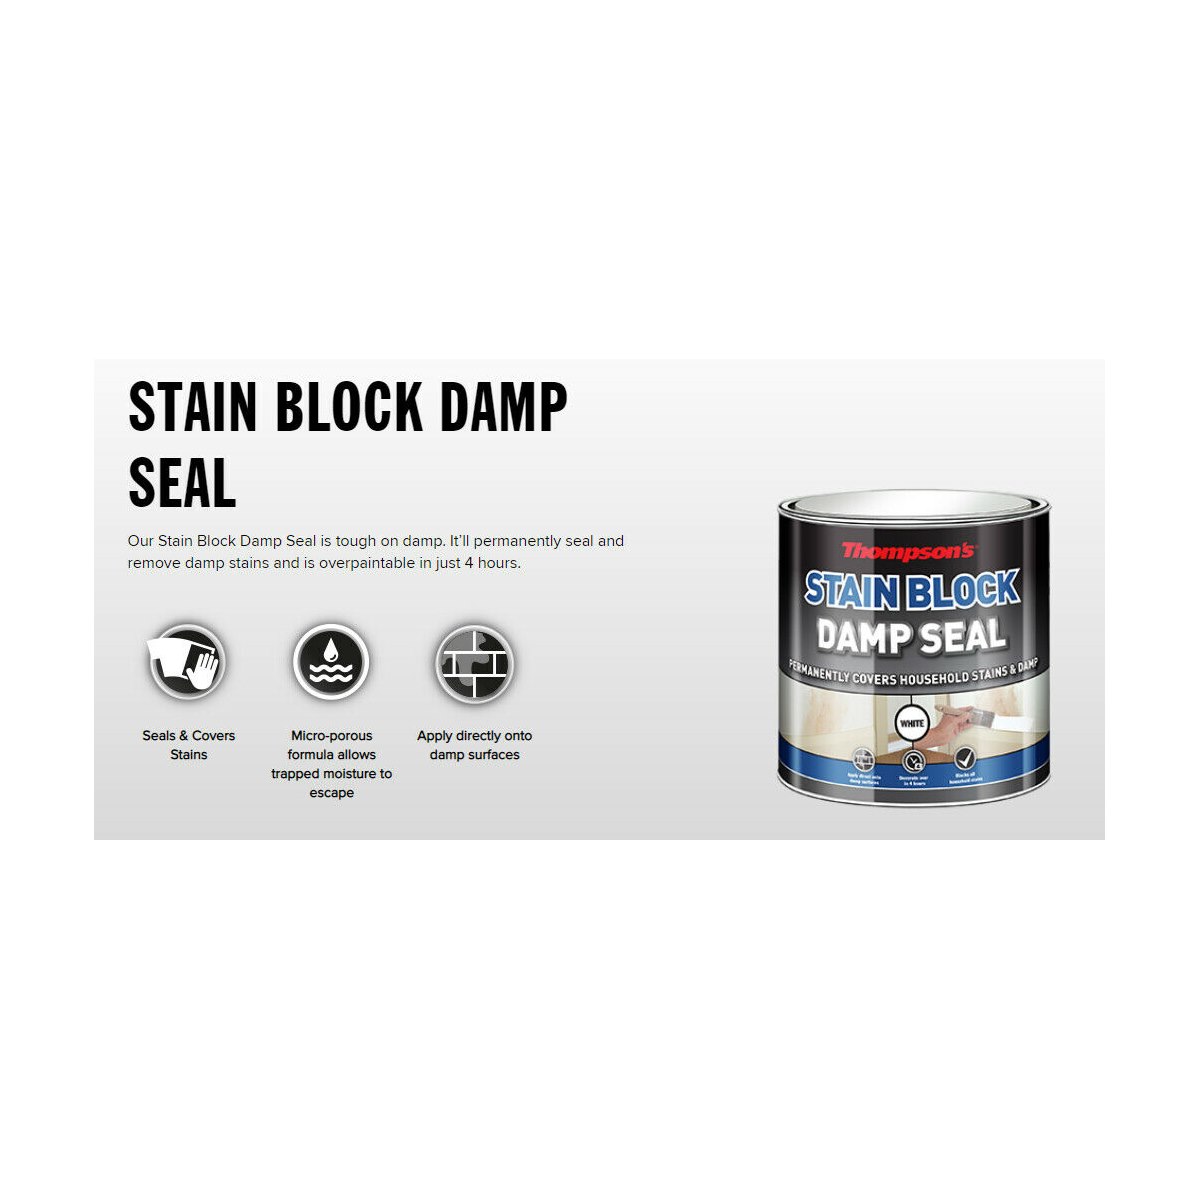 Stain Blocking Damp Seal